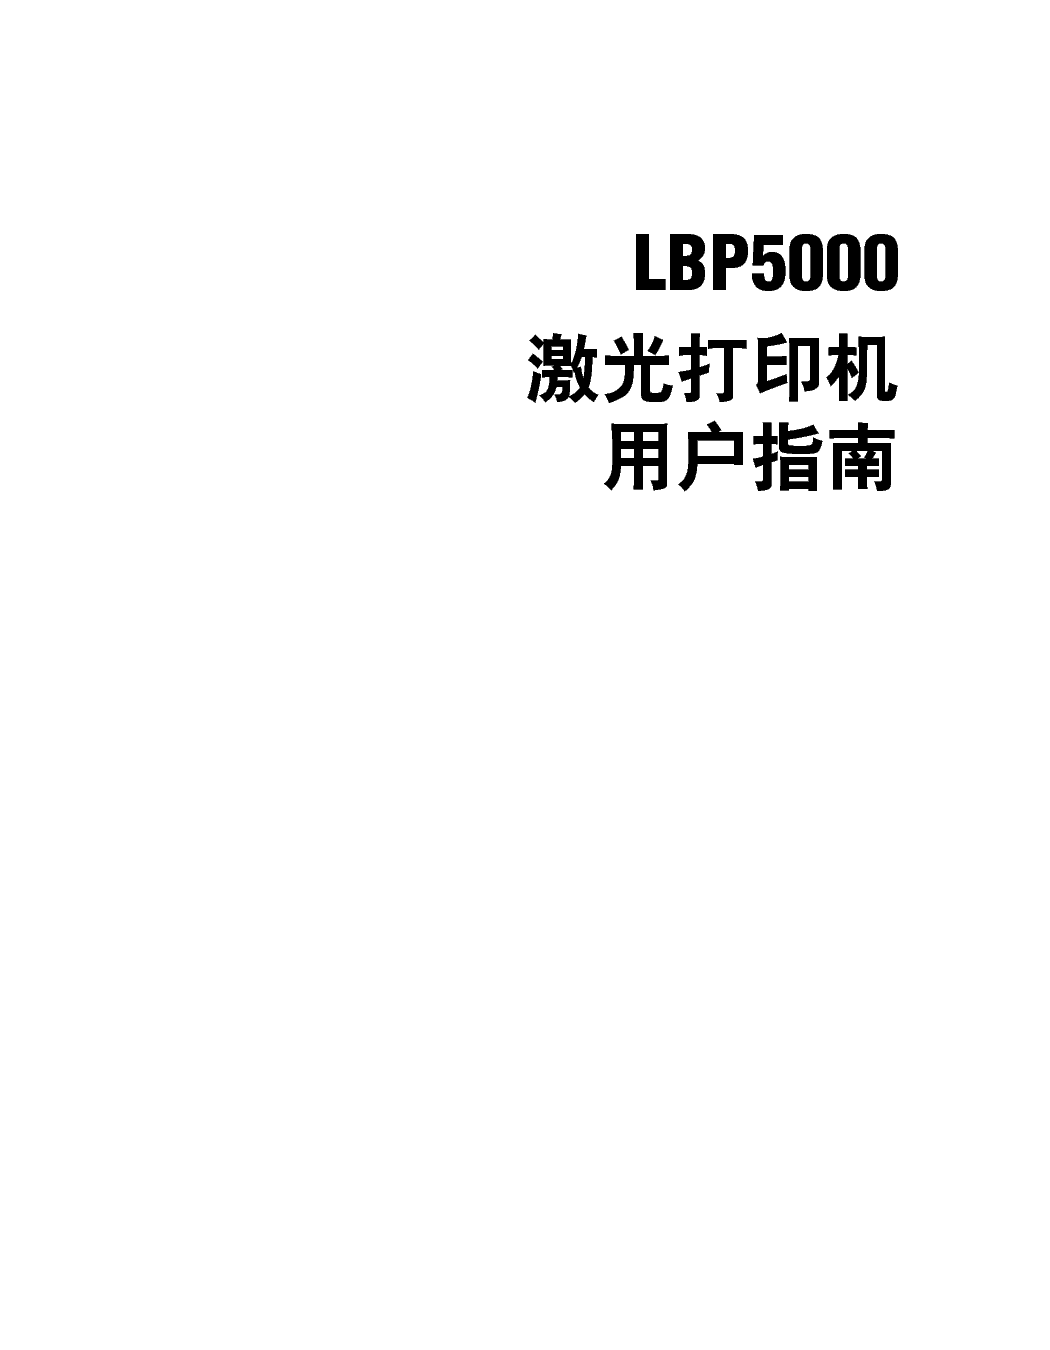 佳能 Canon LBP5000 用户指南 第1页